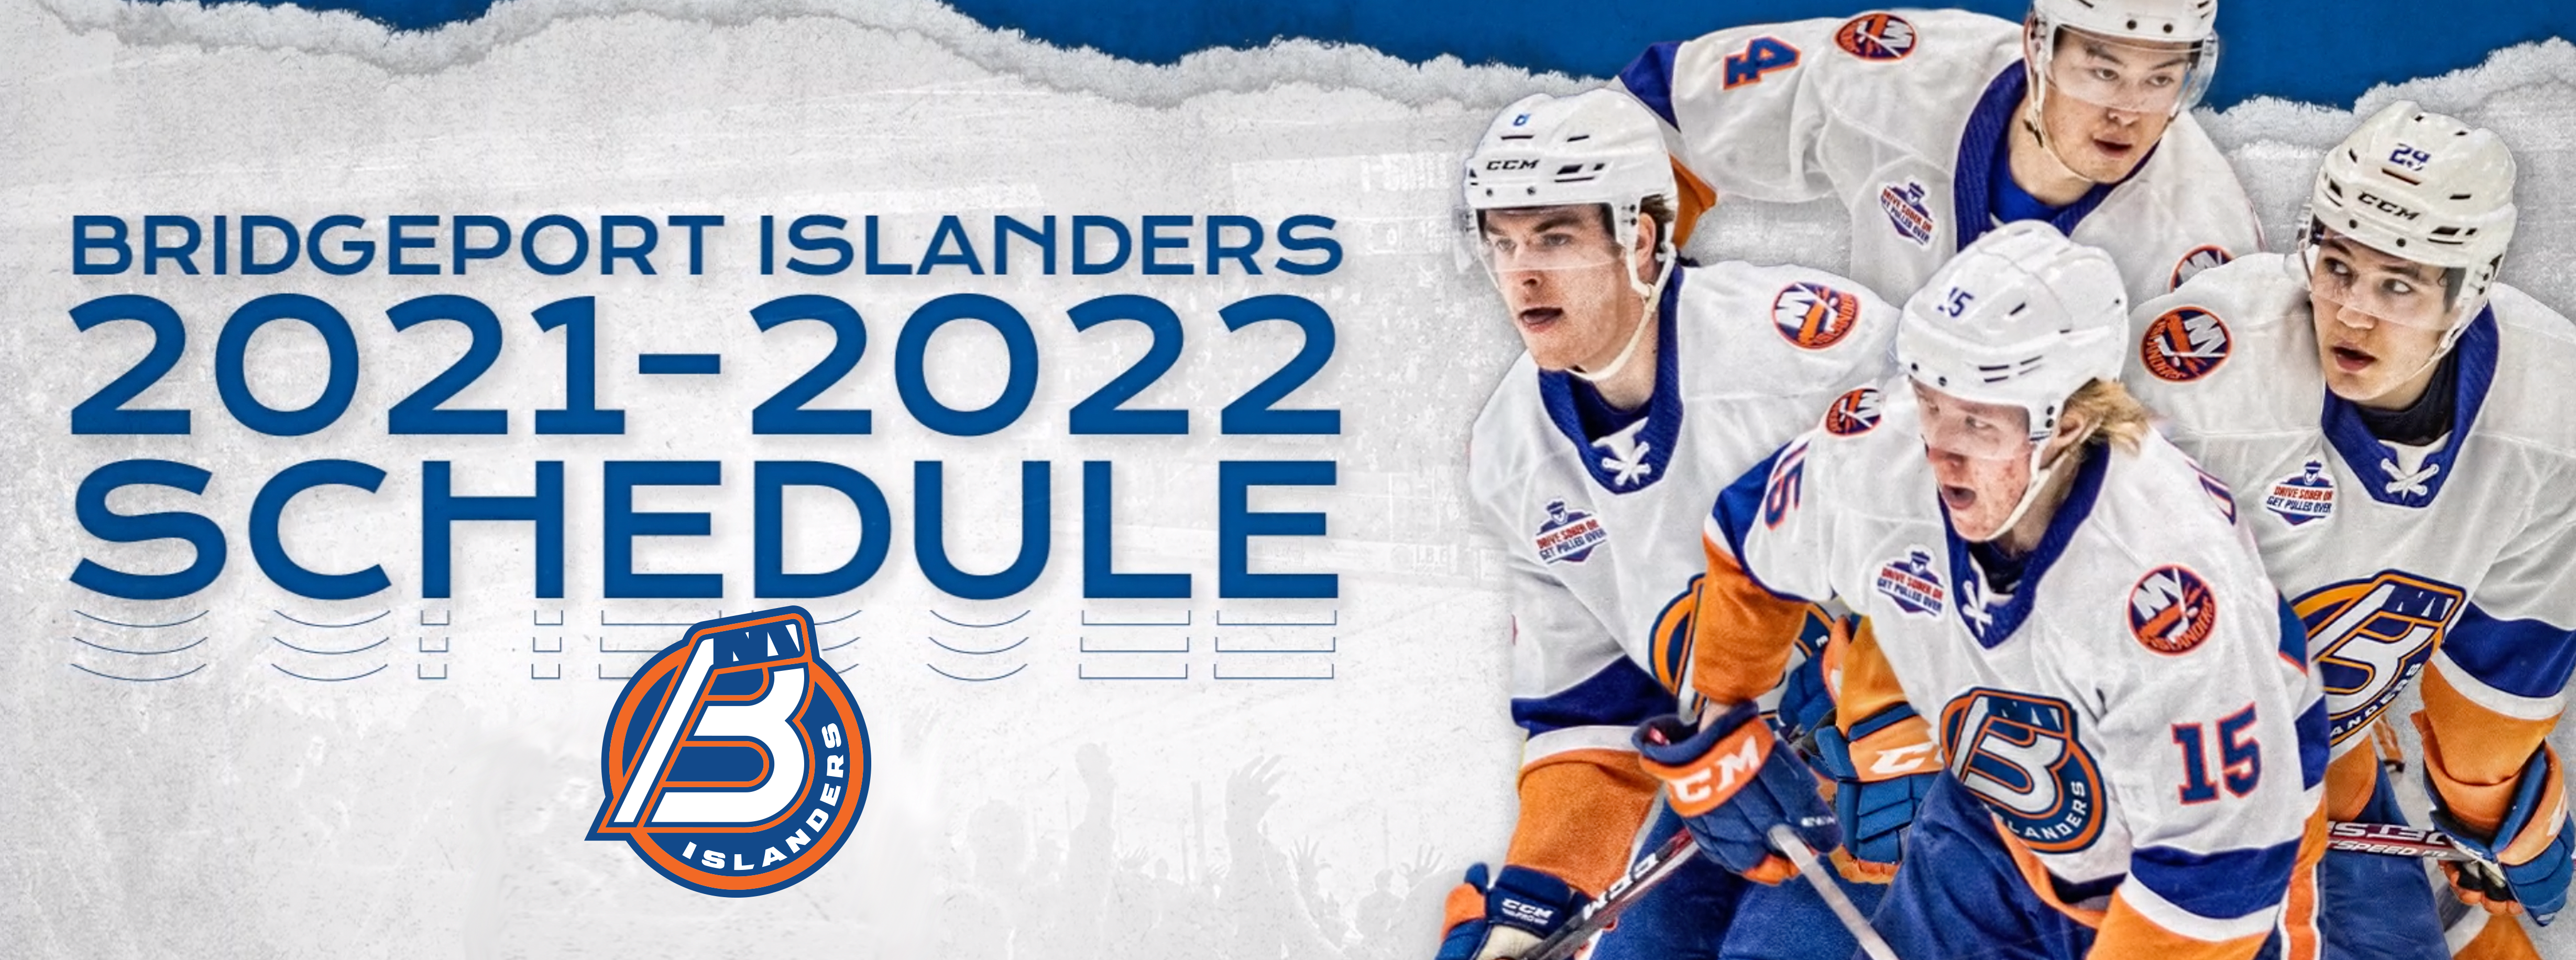 Islanders Schedule 2022 23 Mark Your Calendars! 2021-22 Schedule Announced | Bridgeport Islanders